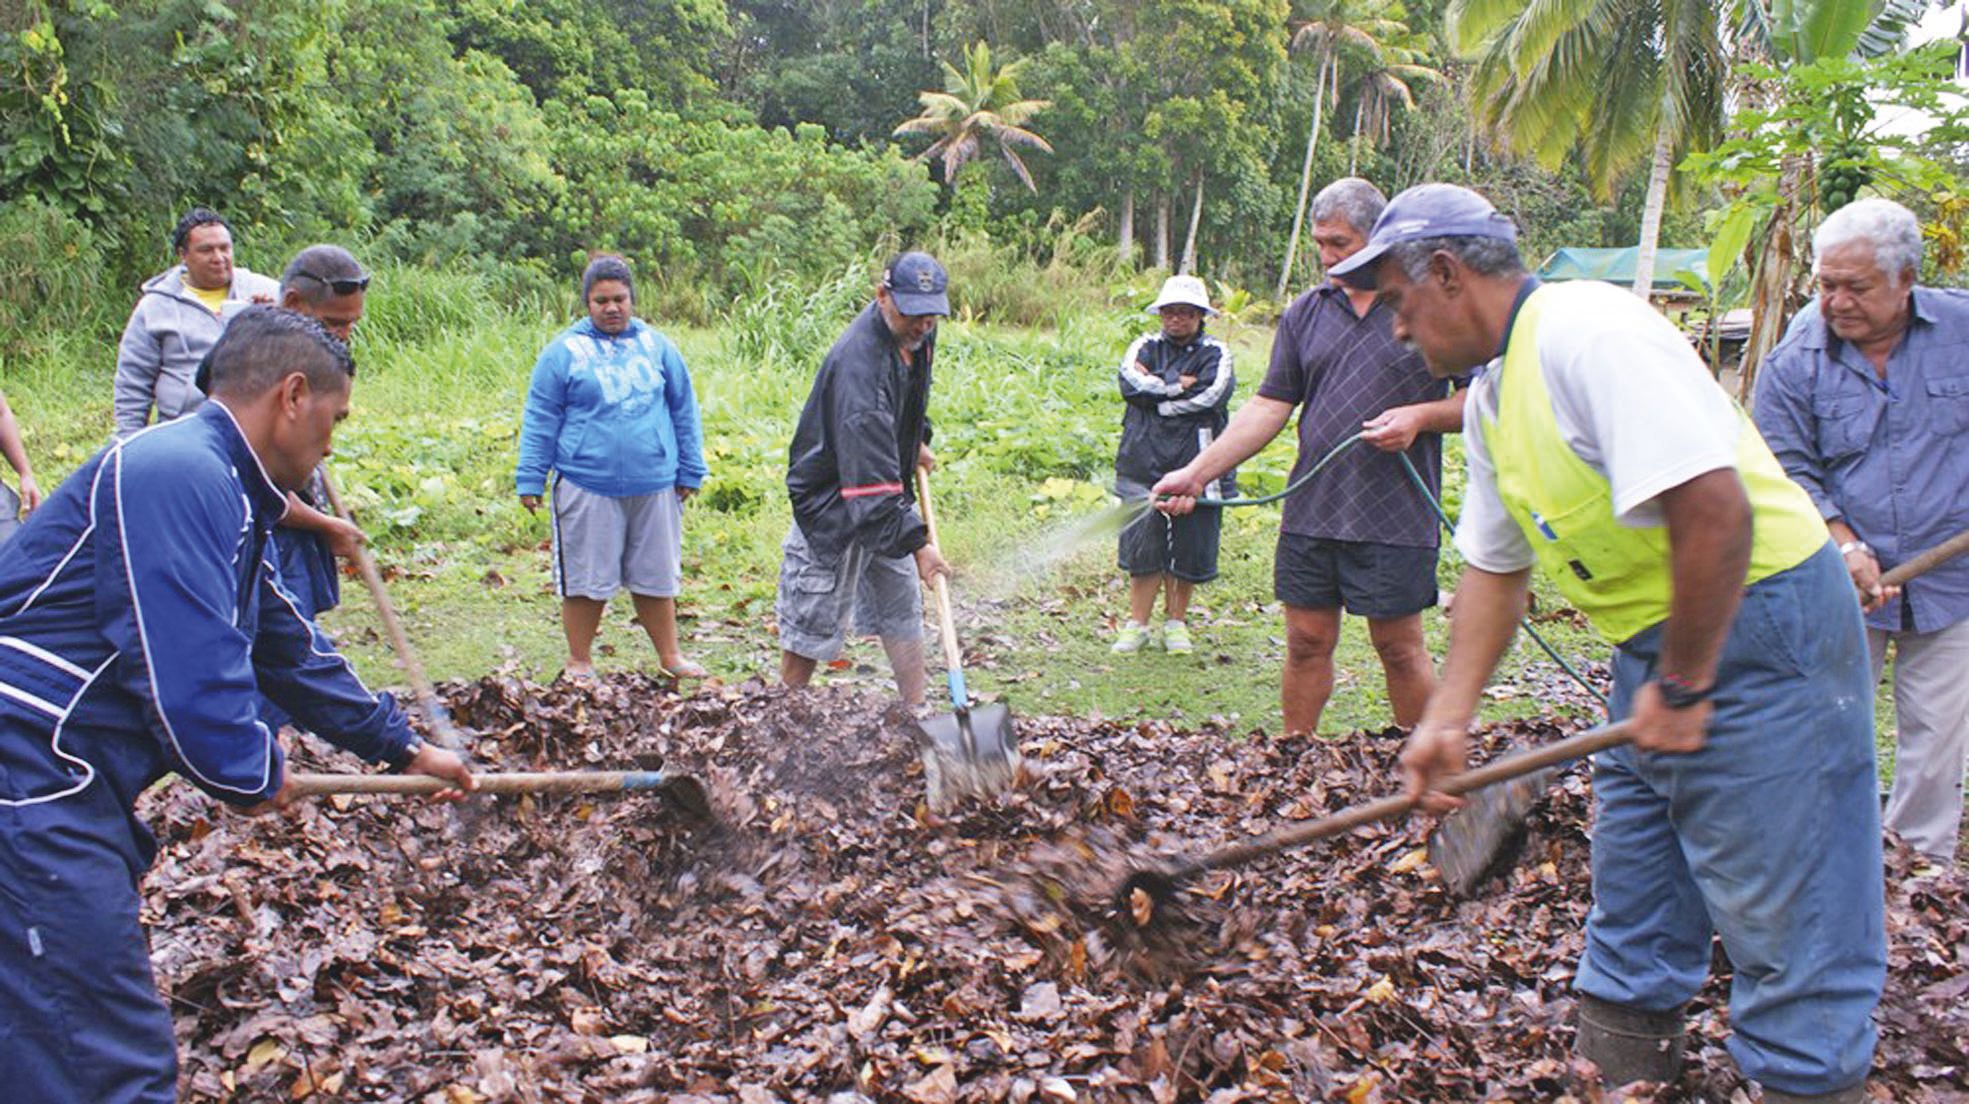 Ce projet de recherche pédologique (étude scientifique des sols) s'appuie sur des agriculteurs de Niue, des Îles Cook  et des Îles Marshall. Le compostage est un des principes mis en œuvre.